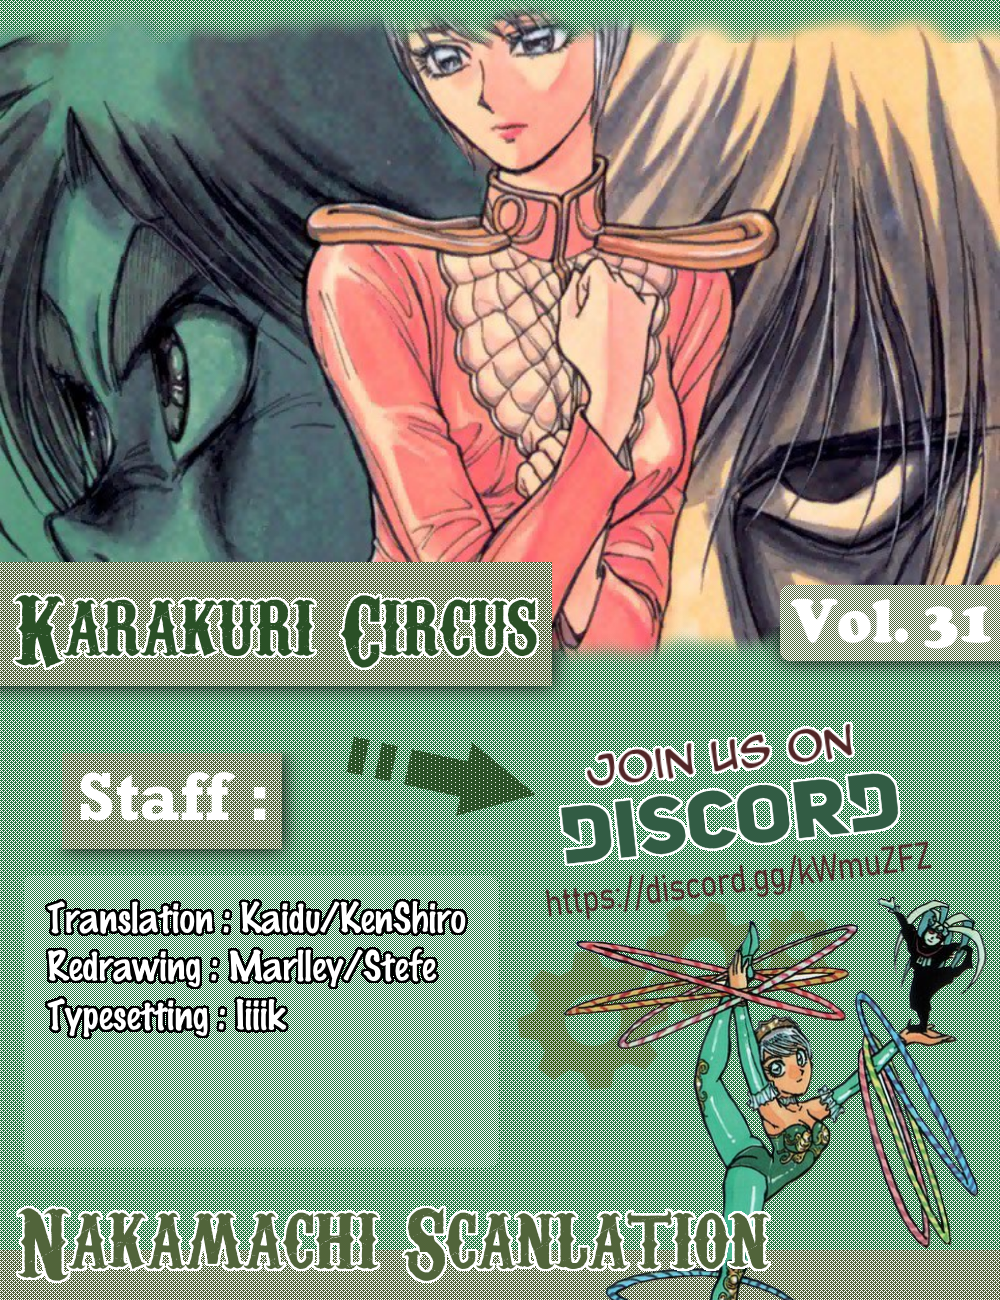 Karakuri Circus Chapter 304: Main Part - Days With Narumi - Act 4: Explosion - Picture 1